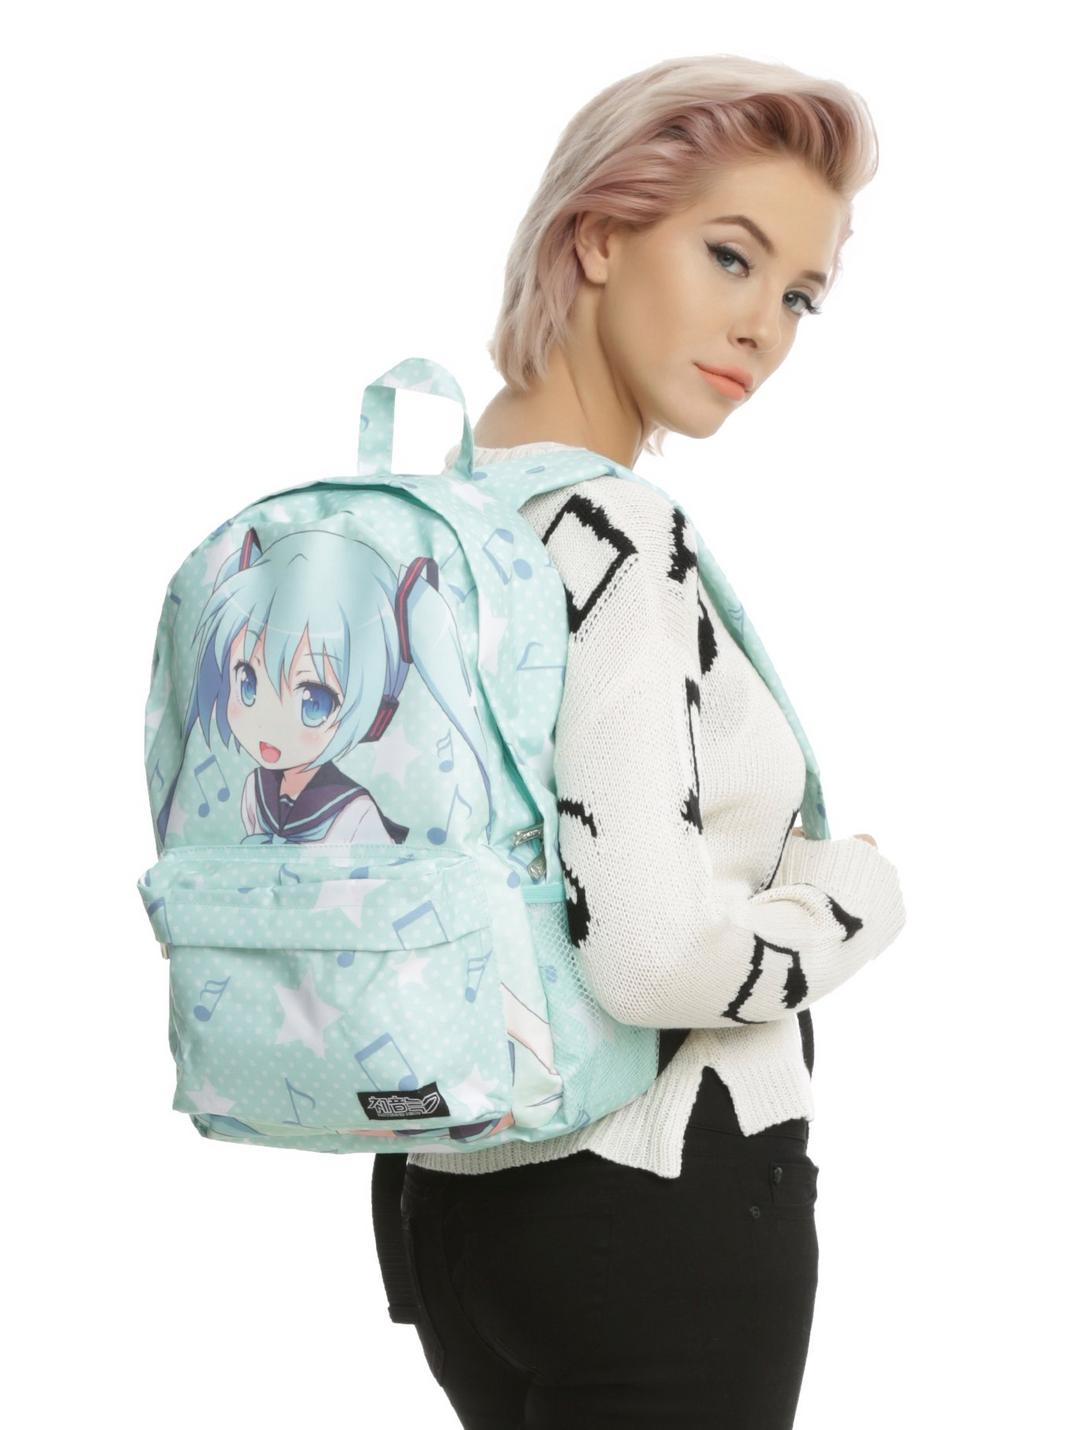 Hatsune Miku Polka Dot Music Note Backpack, , hi-res